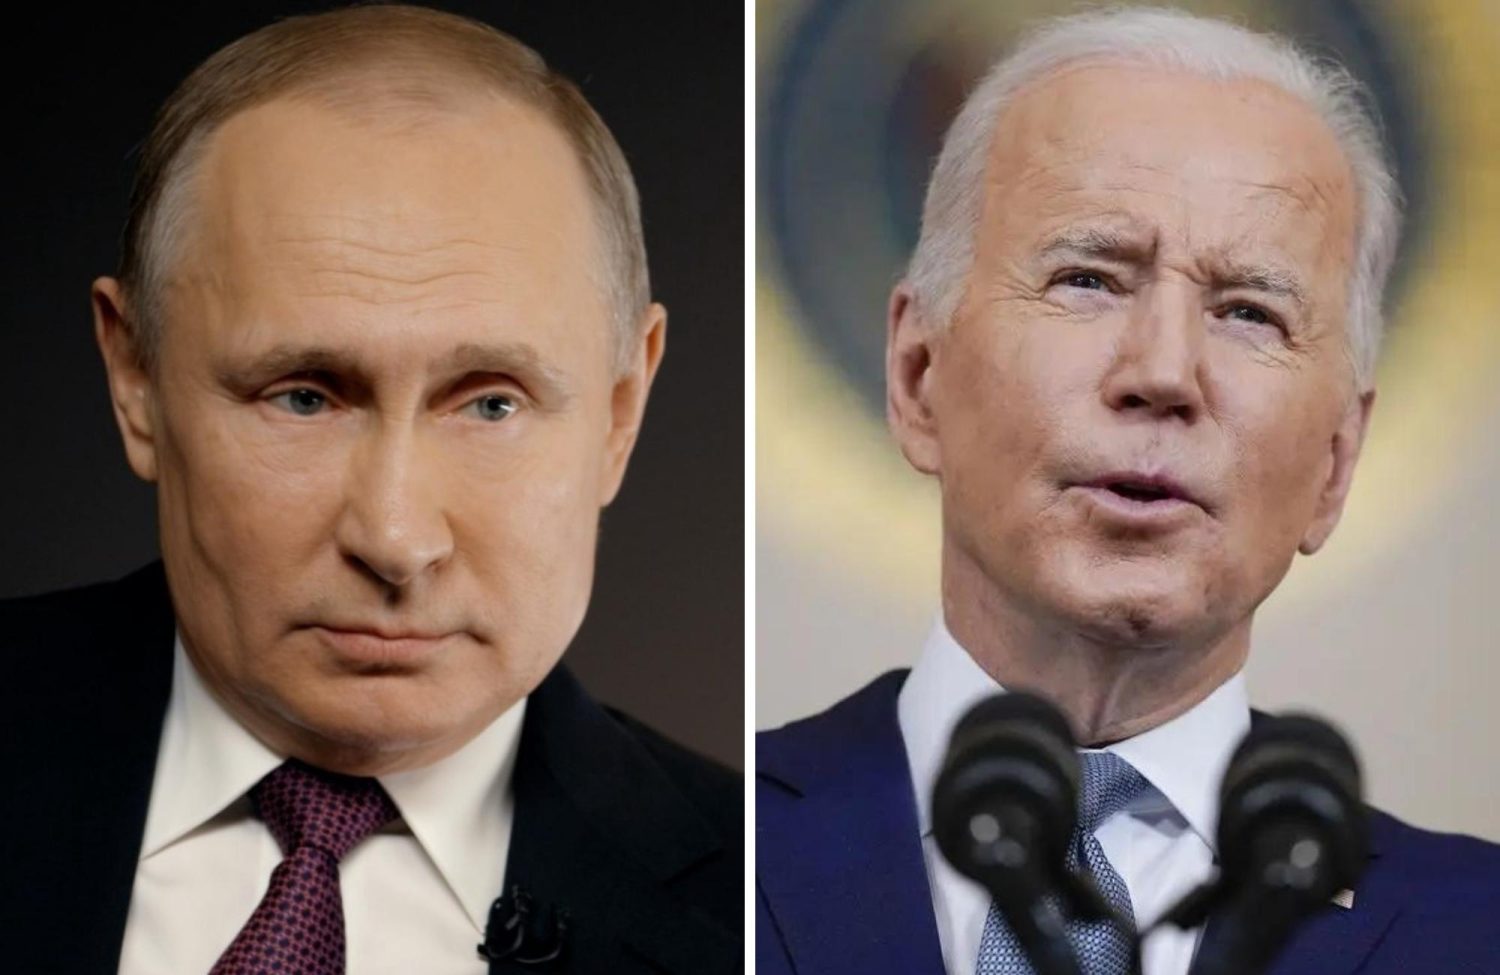 Joe Biden Has Been Sanctioned By Russia